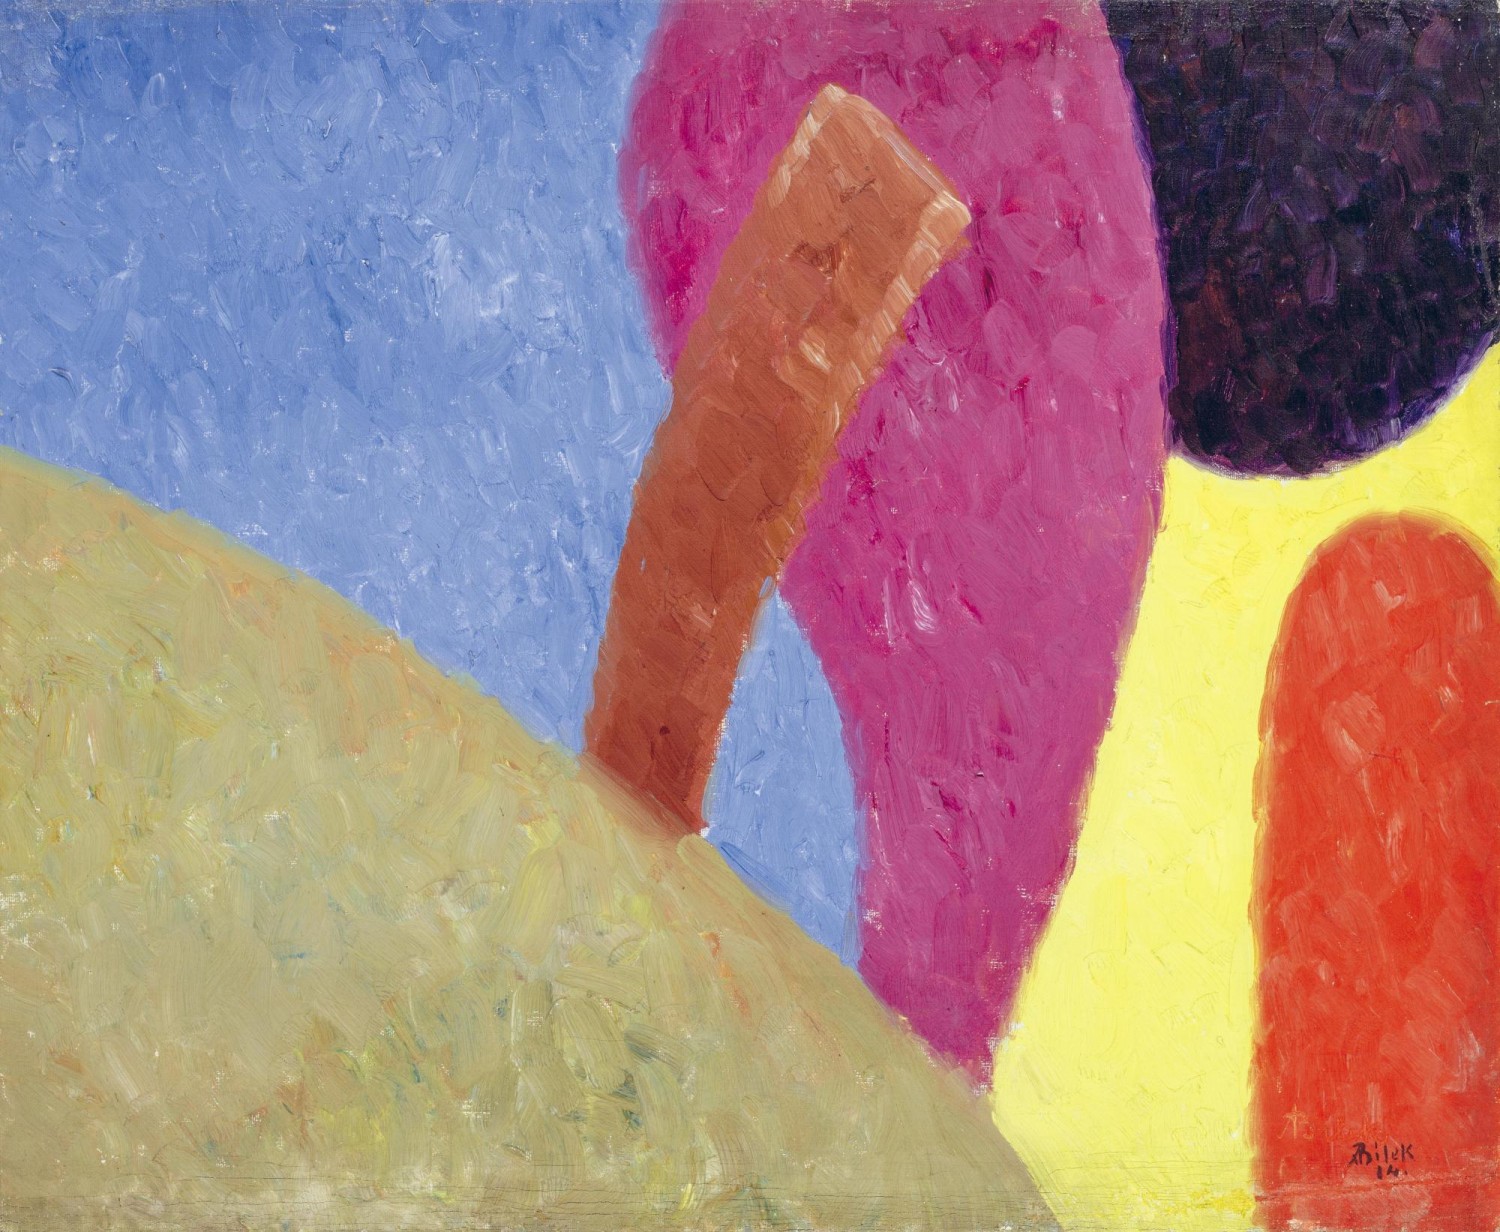 Alois Bílek: Bez názvu (Kompozice), 1914, olej na plátně, 53 x 65 cm, cena: 720 000 Kč, 1. Art Consulting 24. 10. 2021